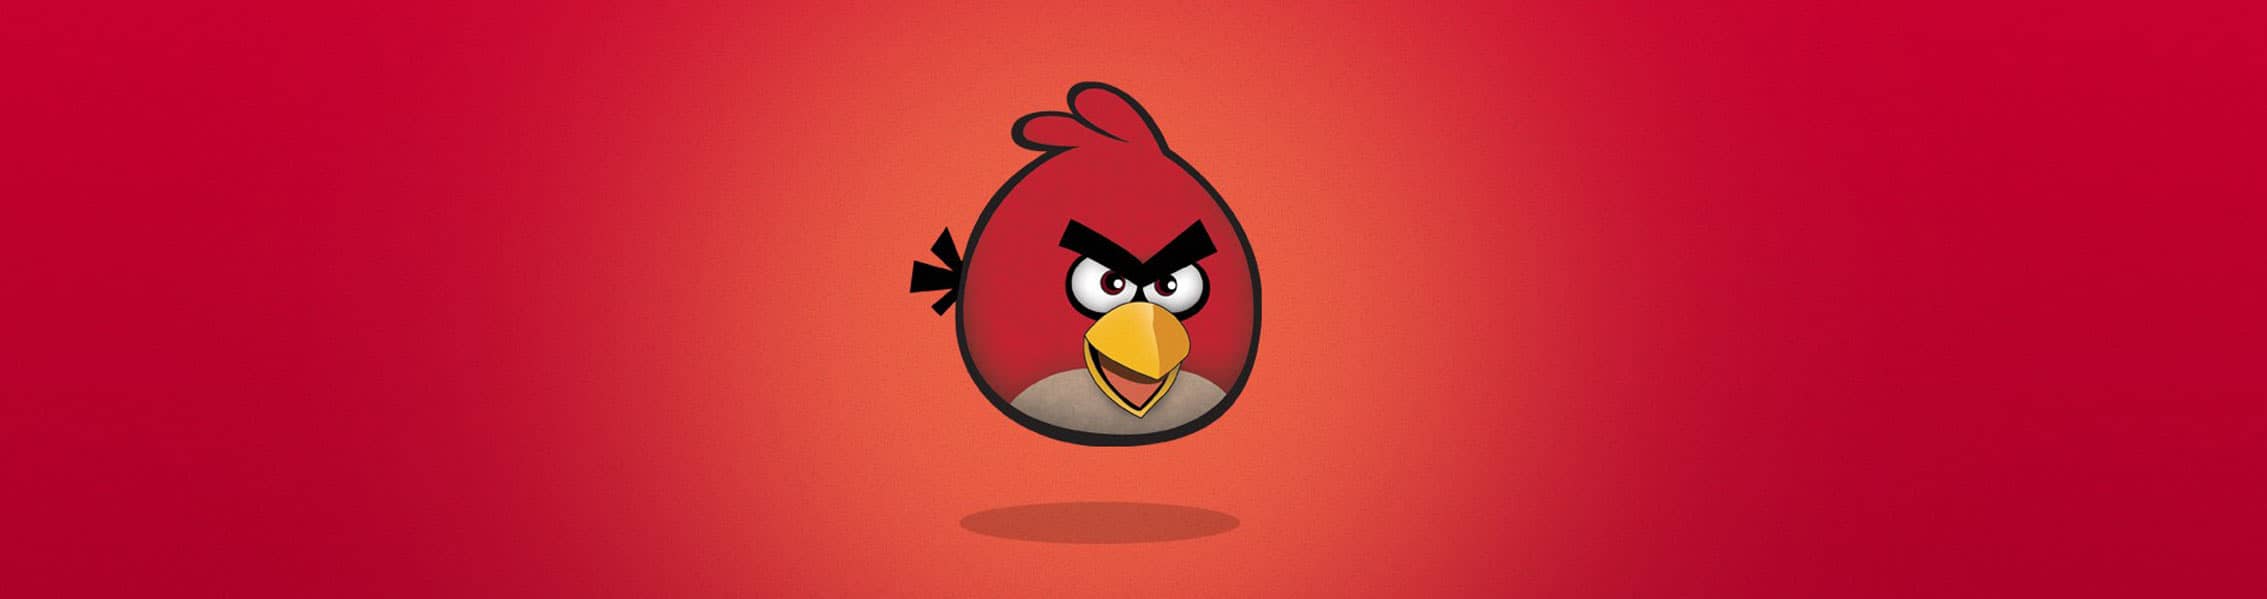 خرید محصولات انگری بردز (Angry Birds)